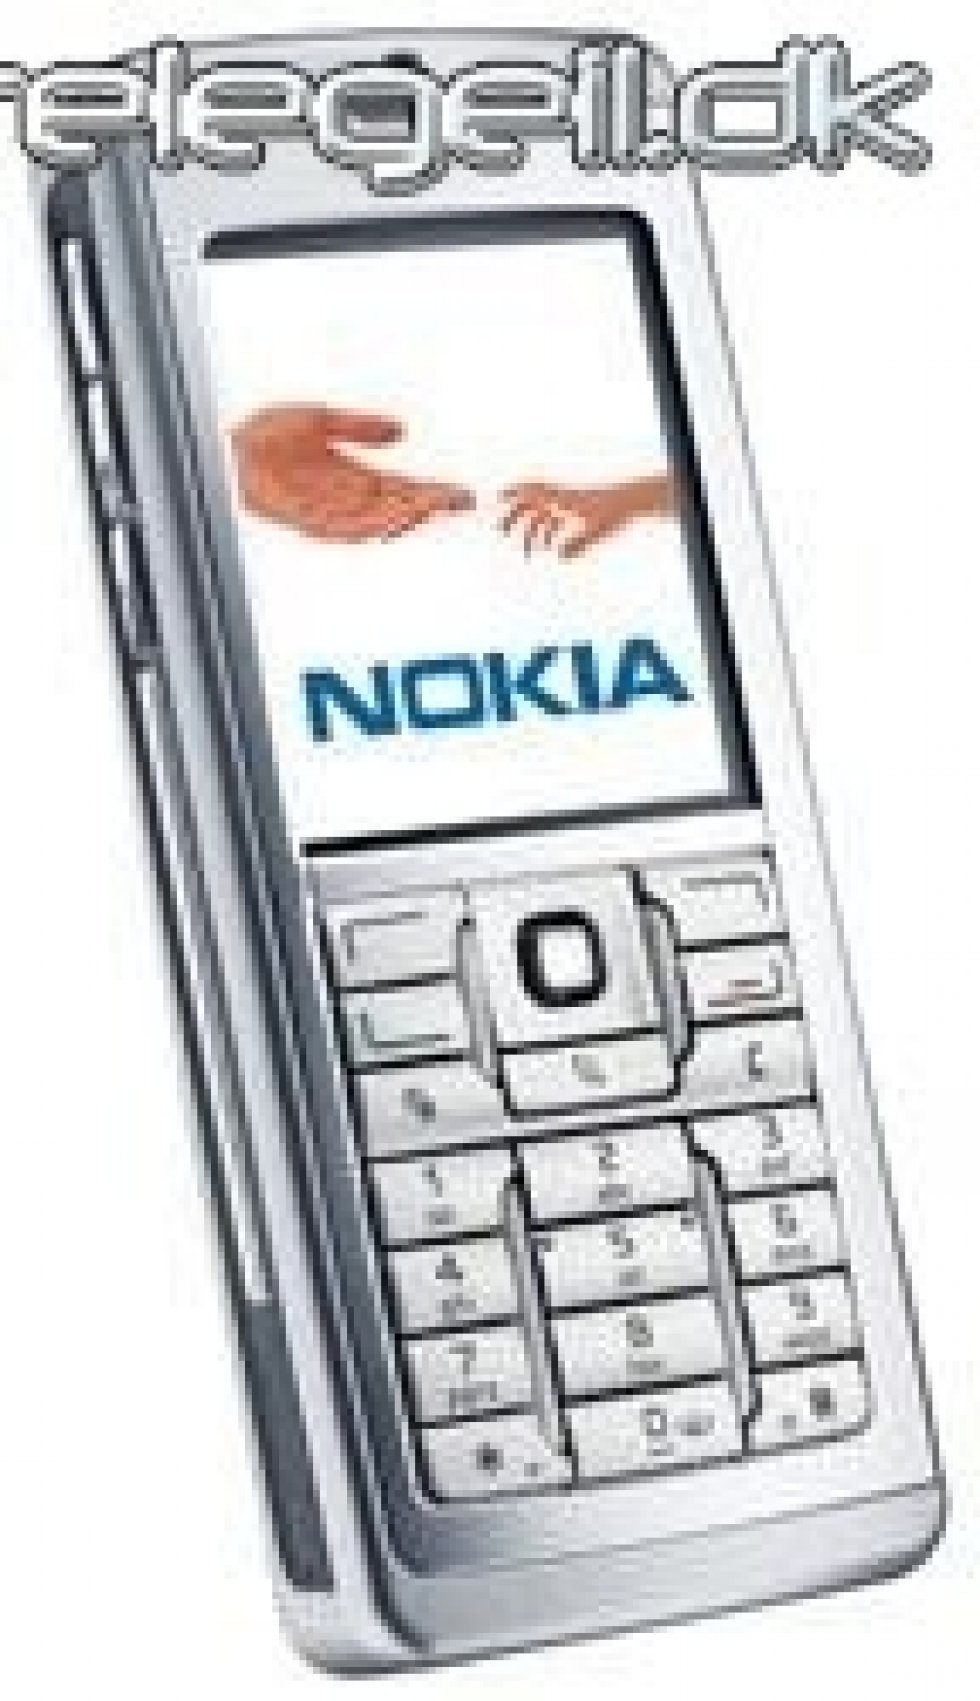 Eseries fra Nokia